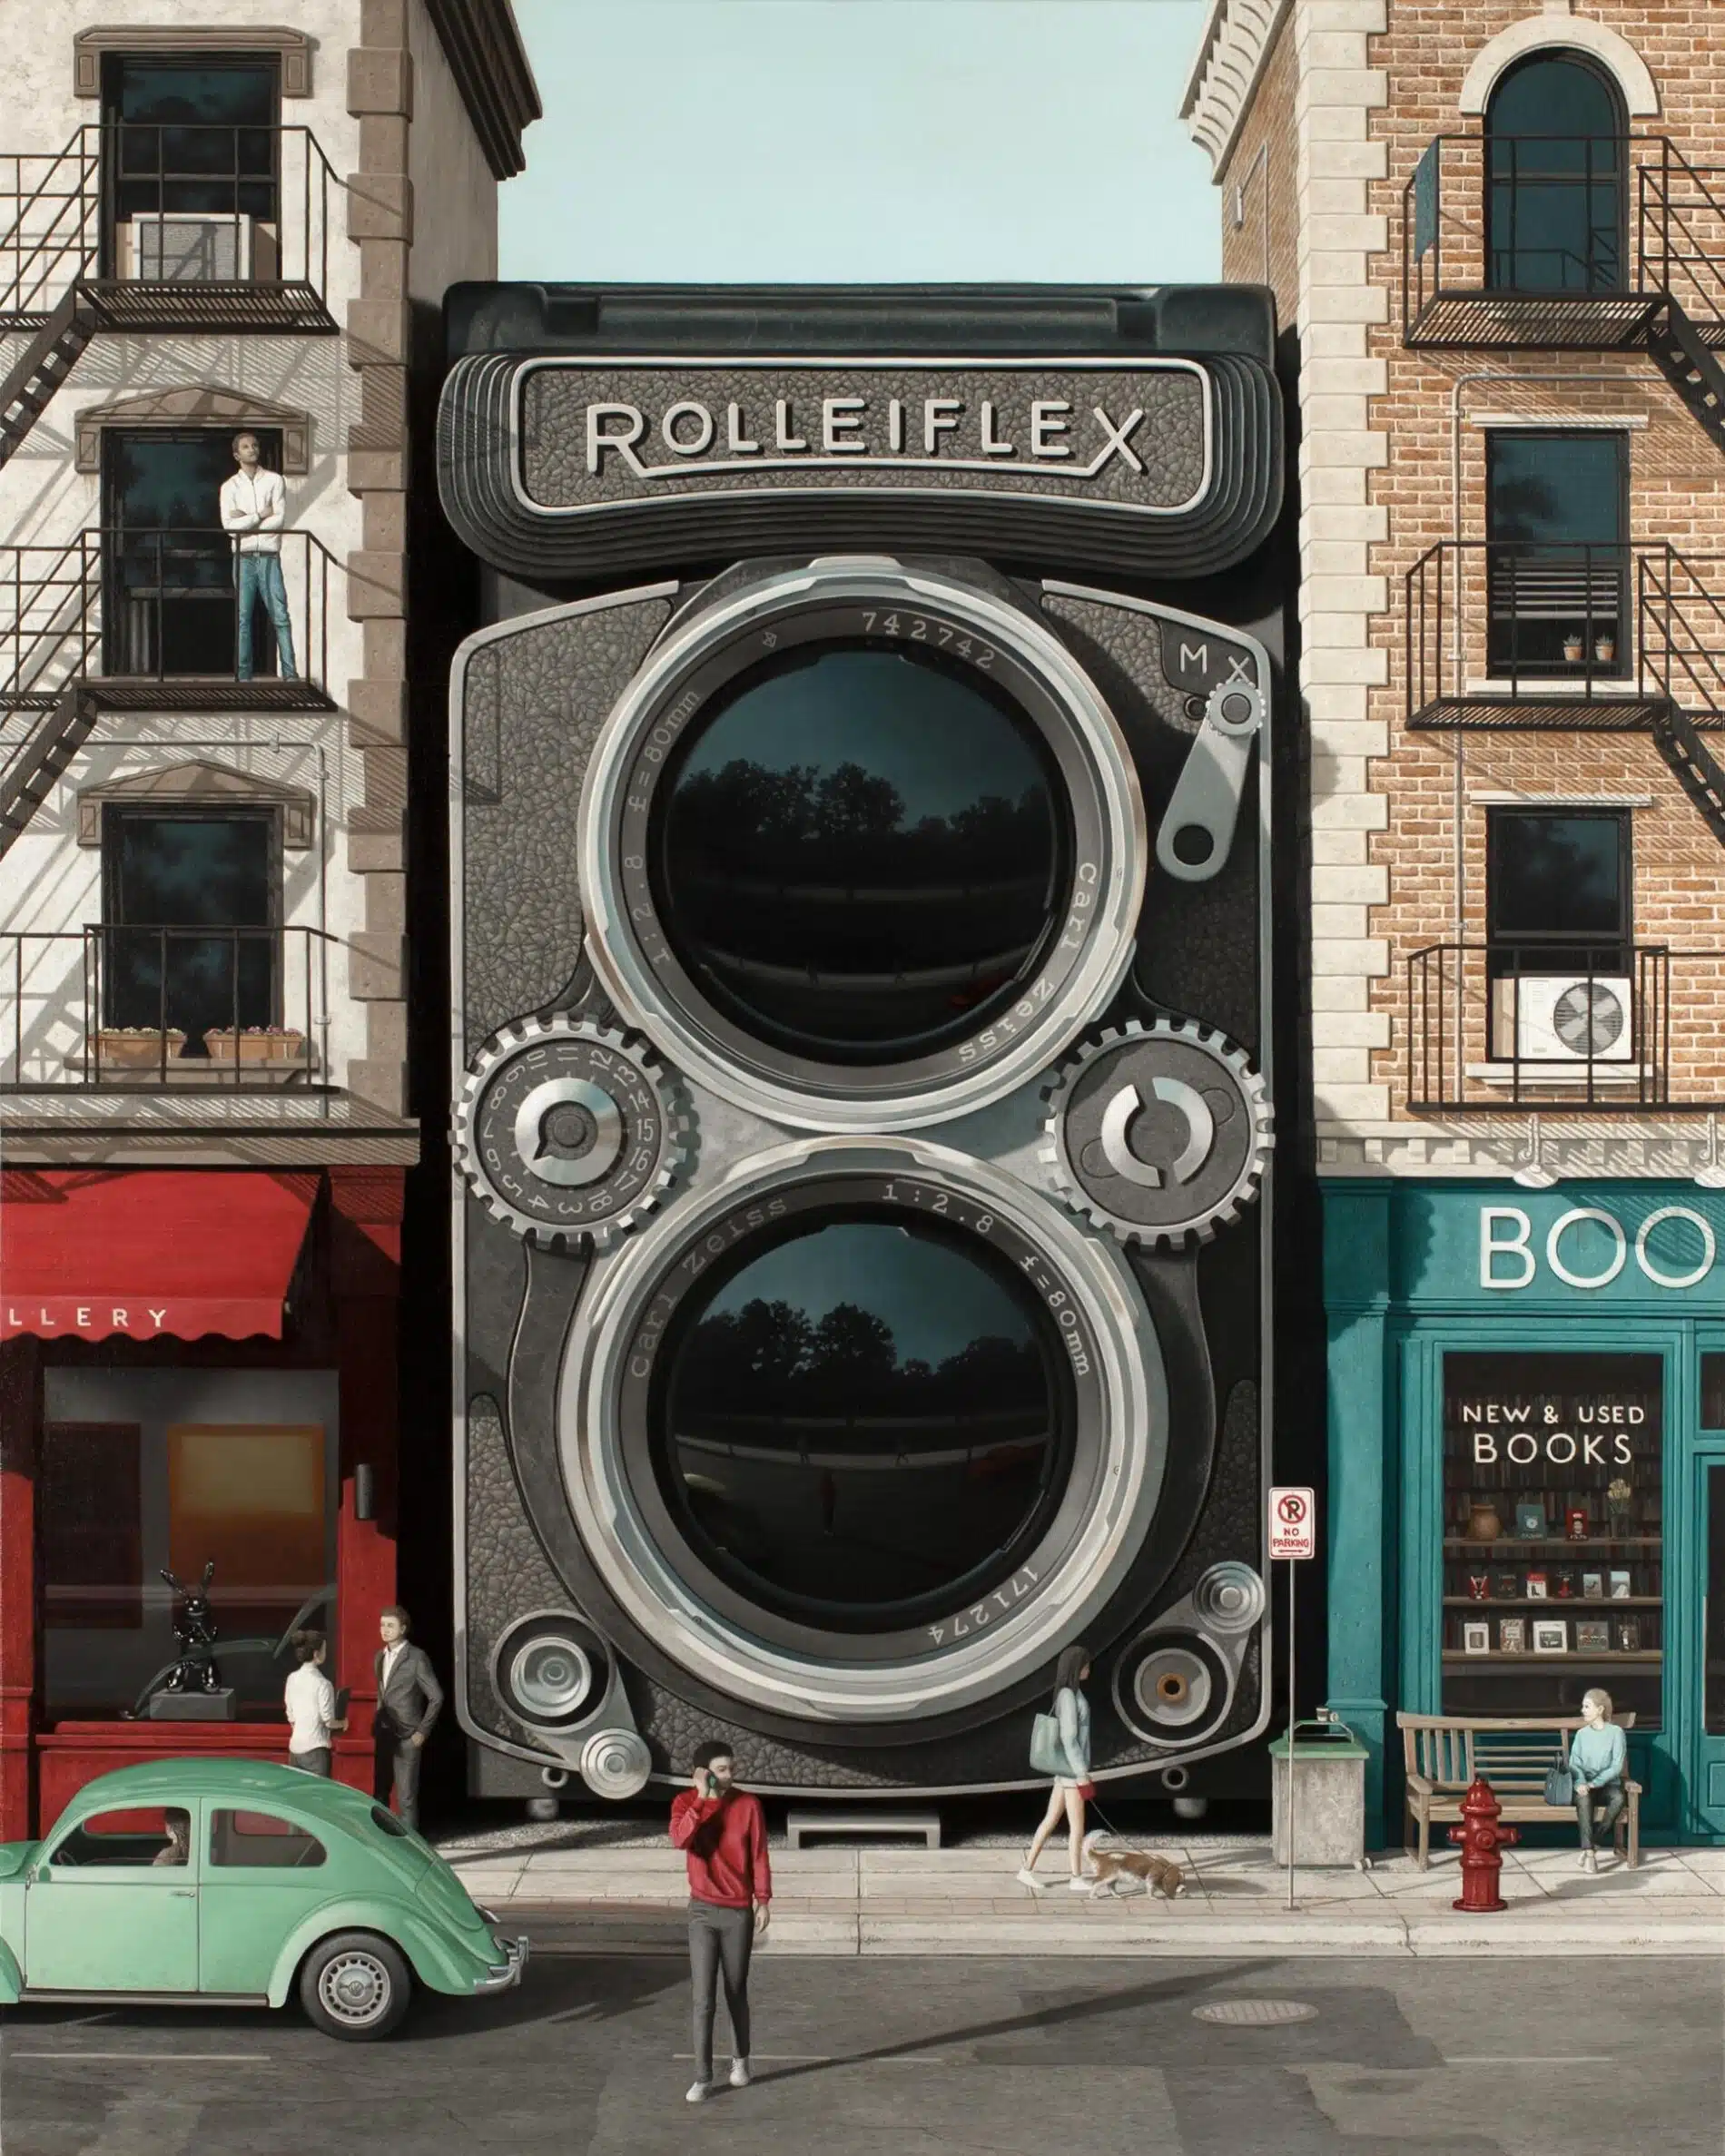 bartels jeff pintura hiper surreal Surveillance Rolleiflex